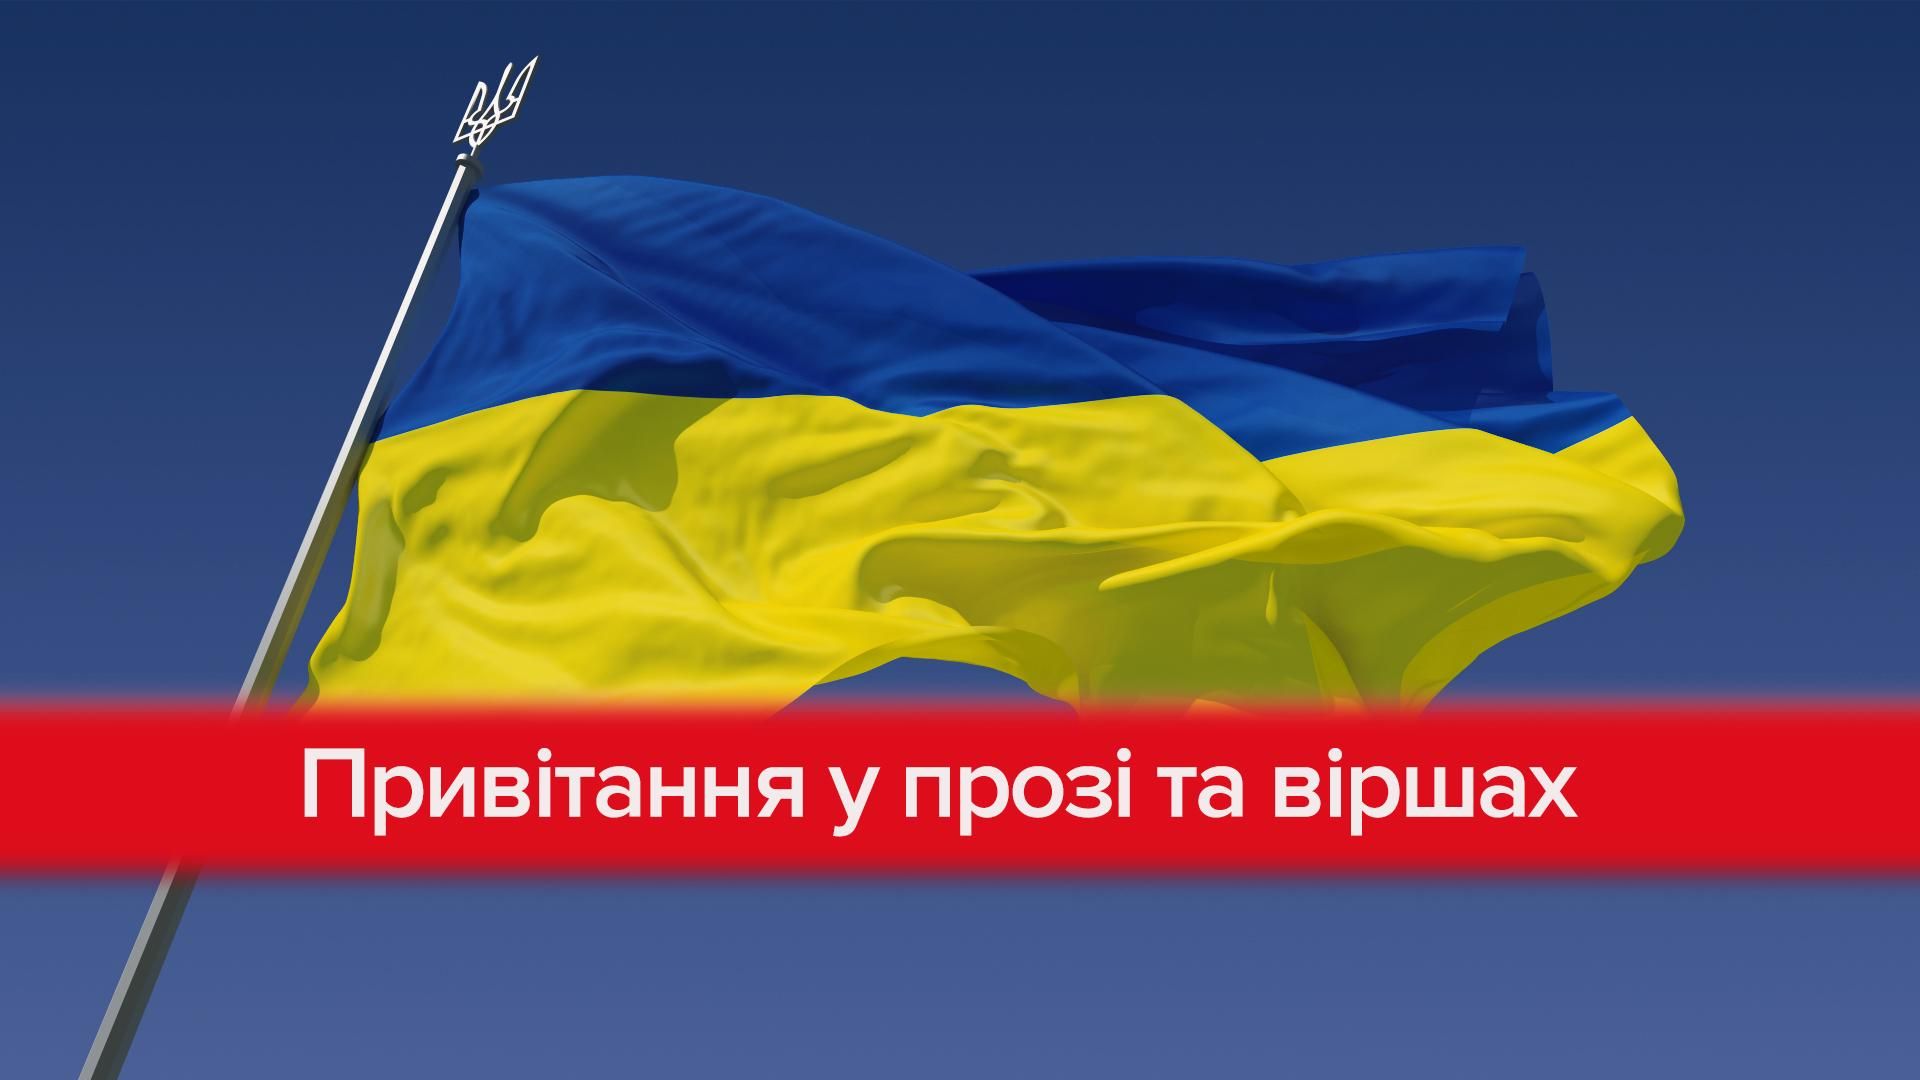 З Днем Збройних Сил України 2019 – привітання прозою, у віршах